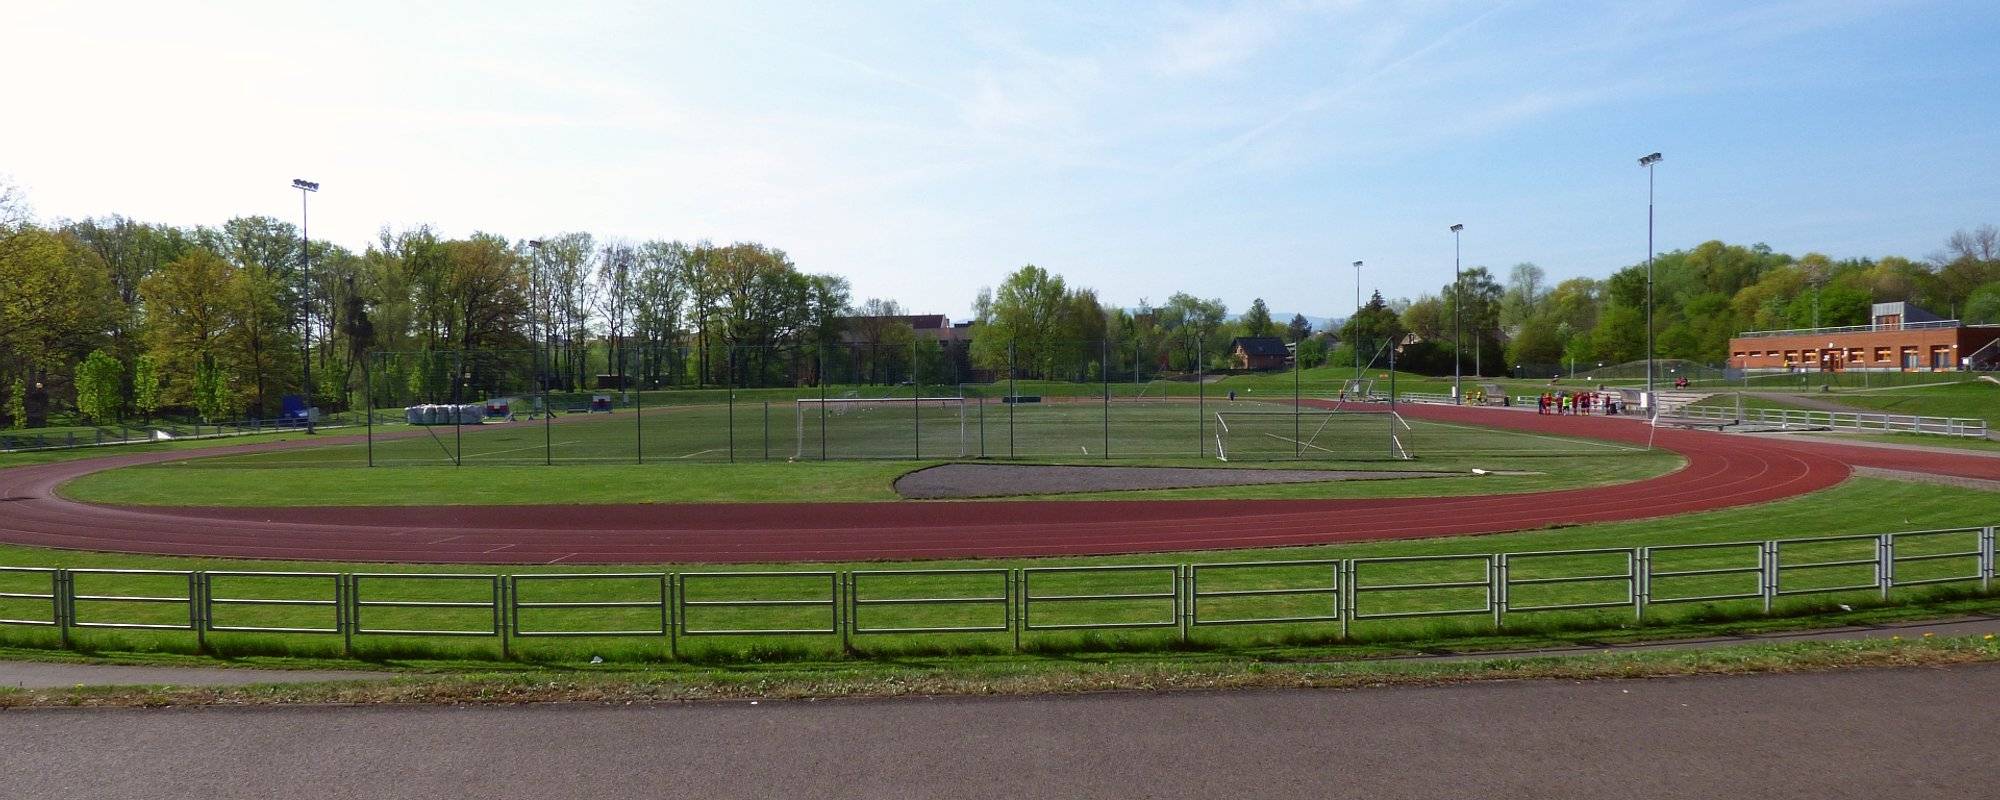 Sportovní areál Frýdecká - Český Těšín (CZ) - Sports Complex Frydecka - Český Těšín (CZ)